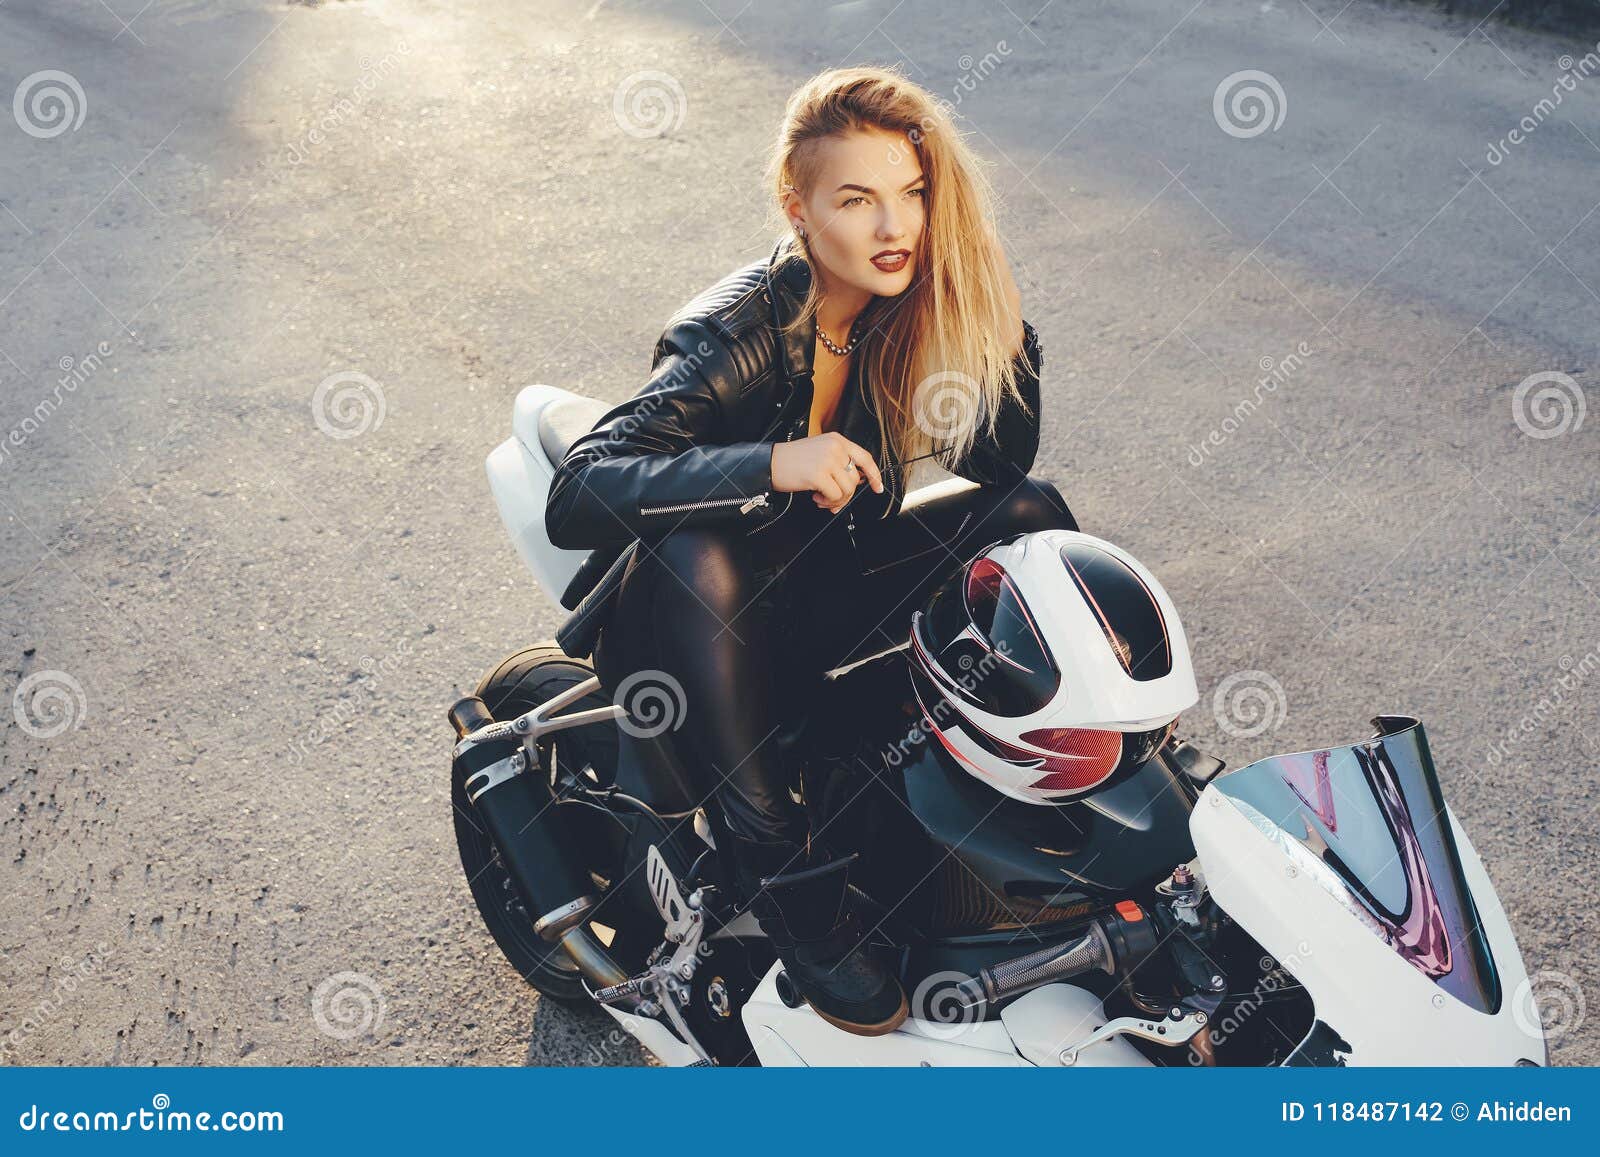 Young Beautiful Biker Woman Sitting on Motorbike Posing Stock Photo ...